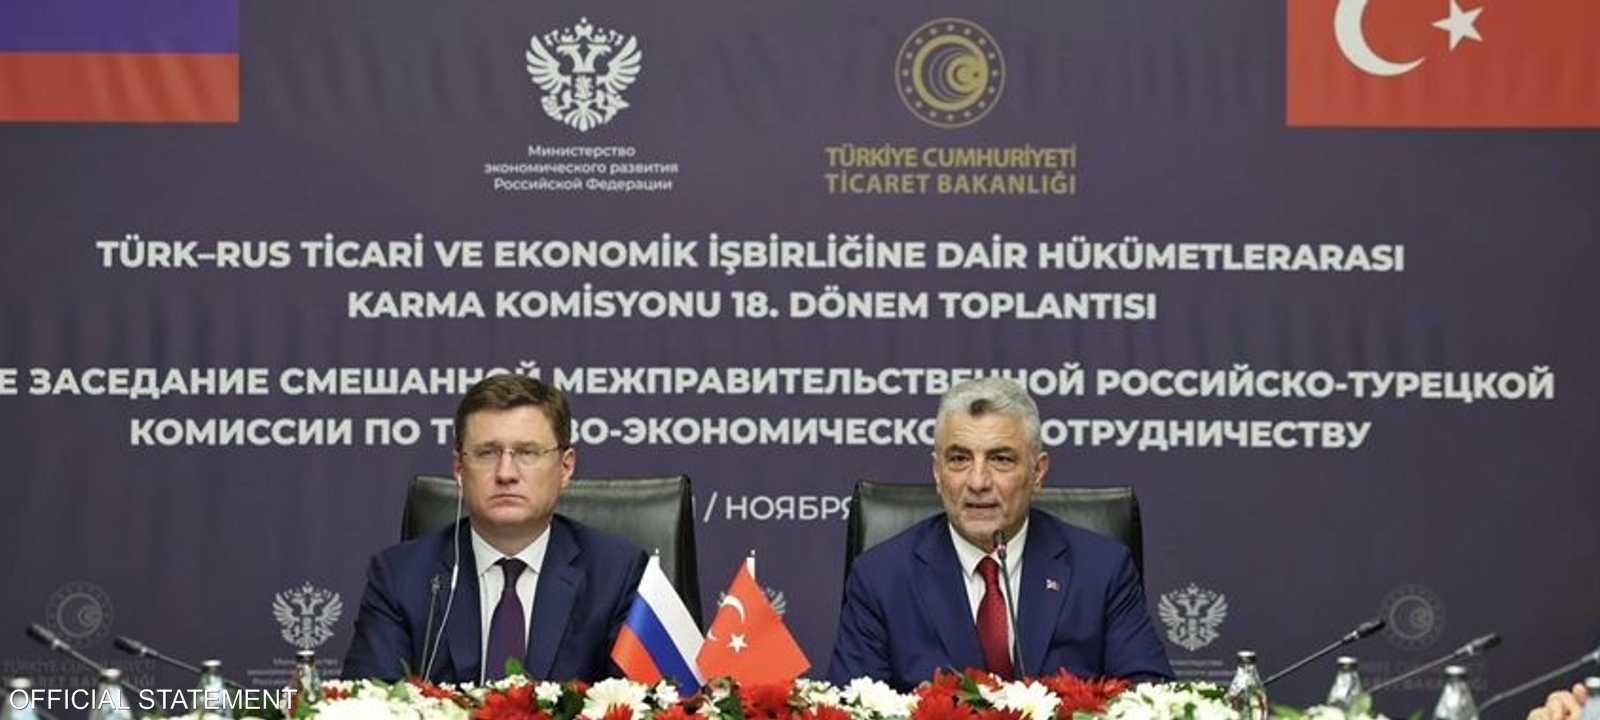 اجتماع لتعزيز العلاقات بين روسيا وتركيا